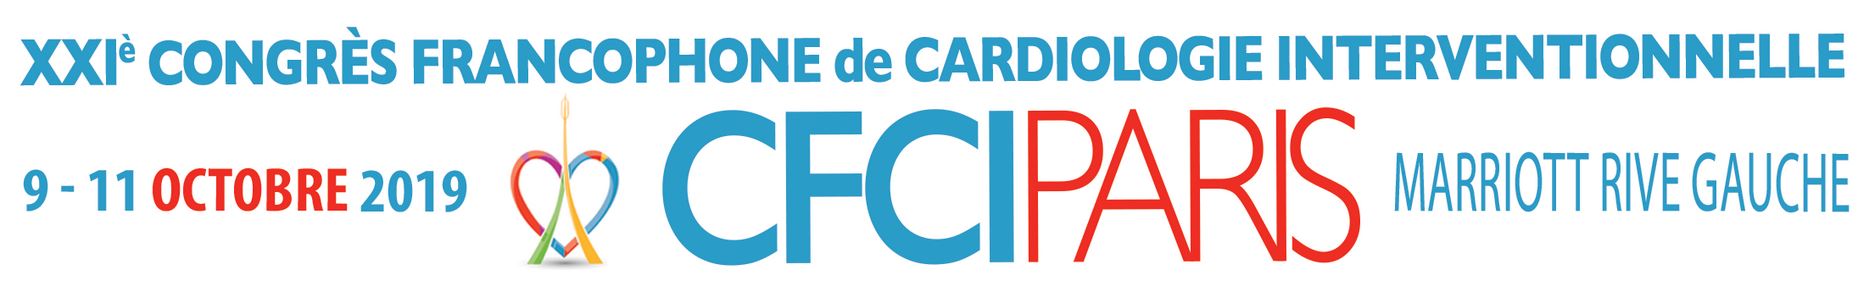 XXIe Congrès Francophone de Cardiologie interventionnelle CFCI 2019